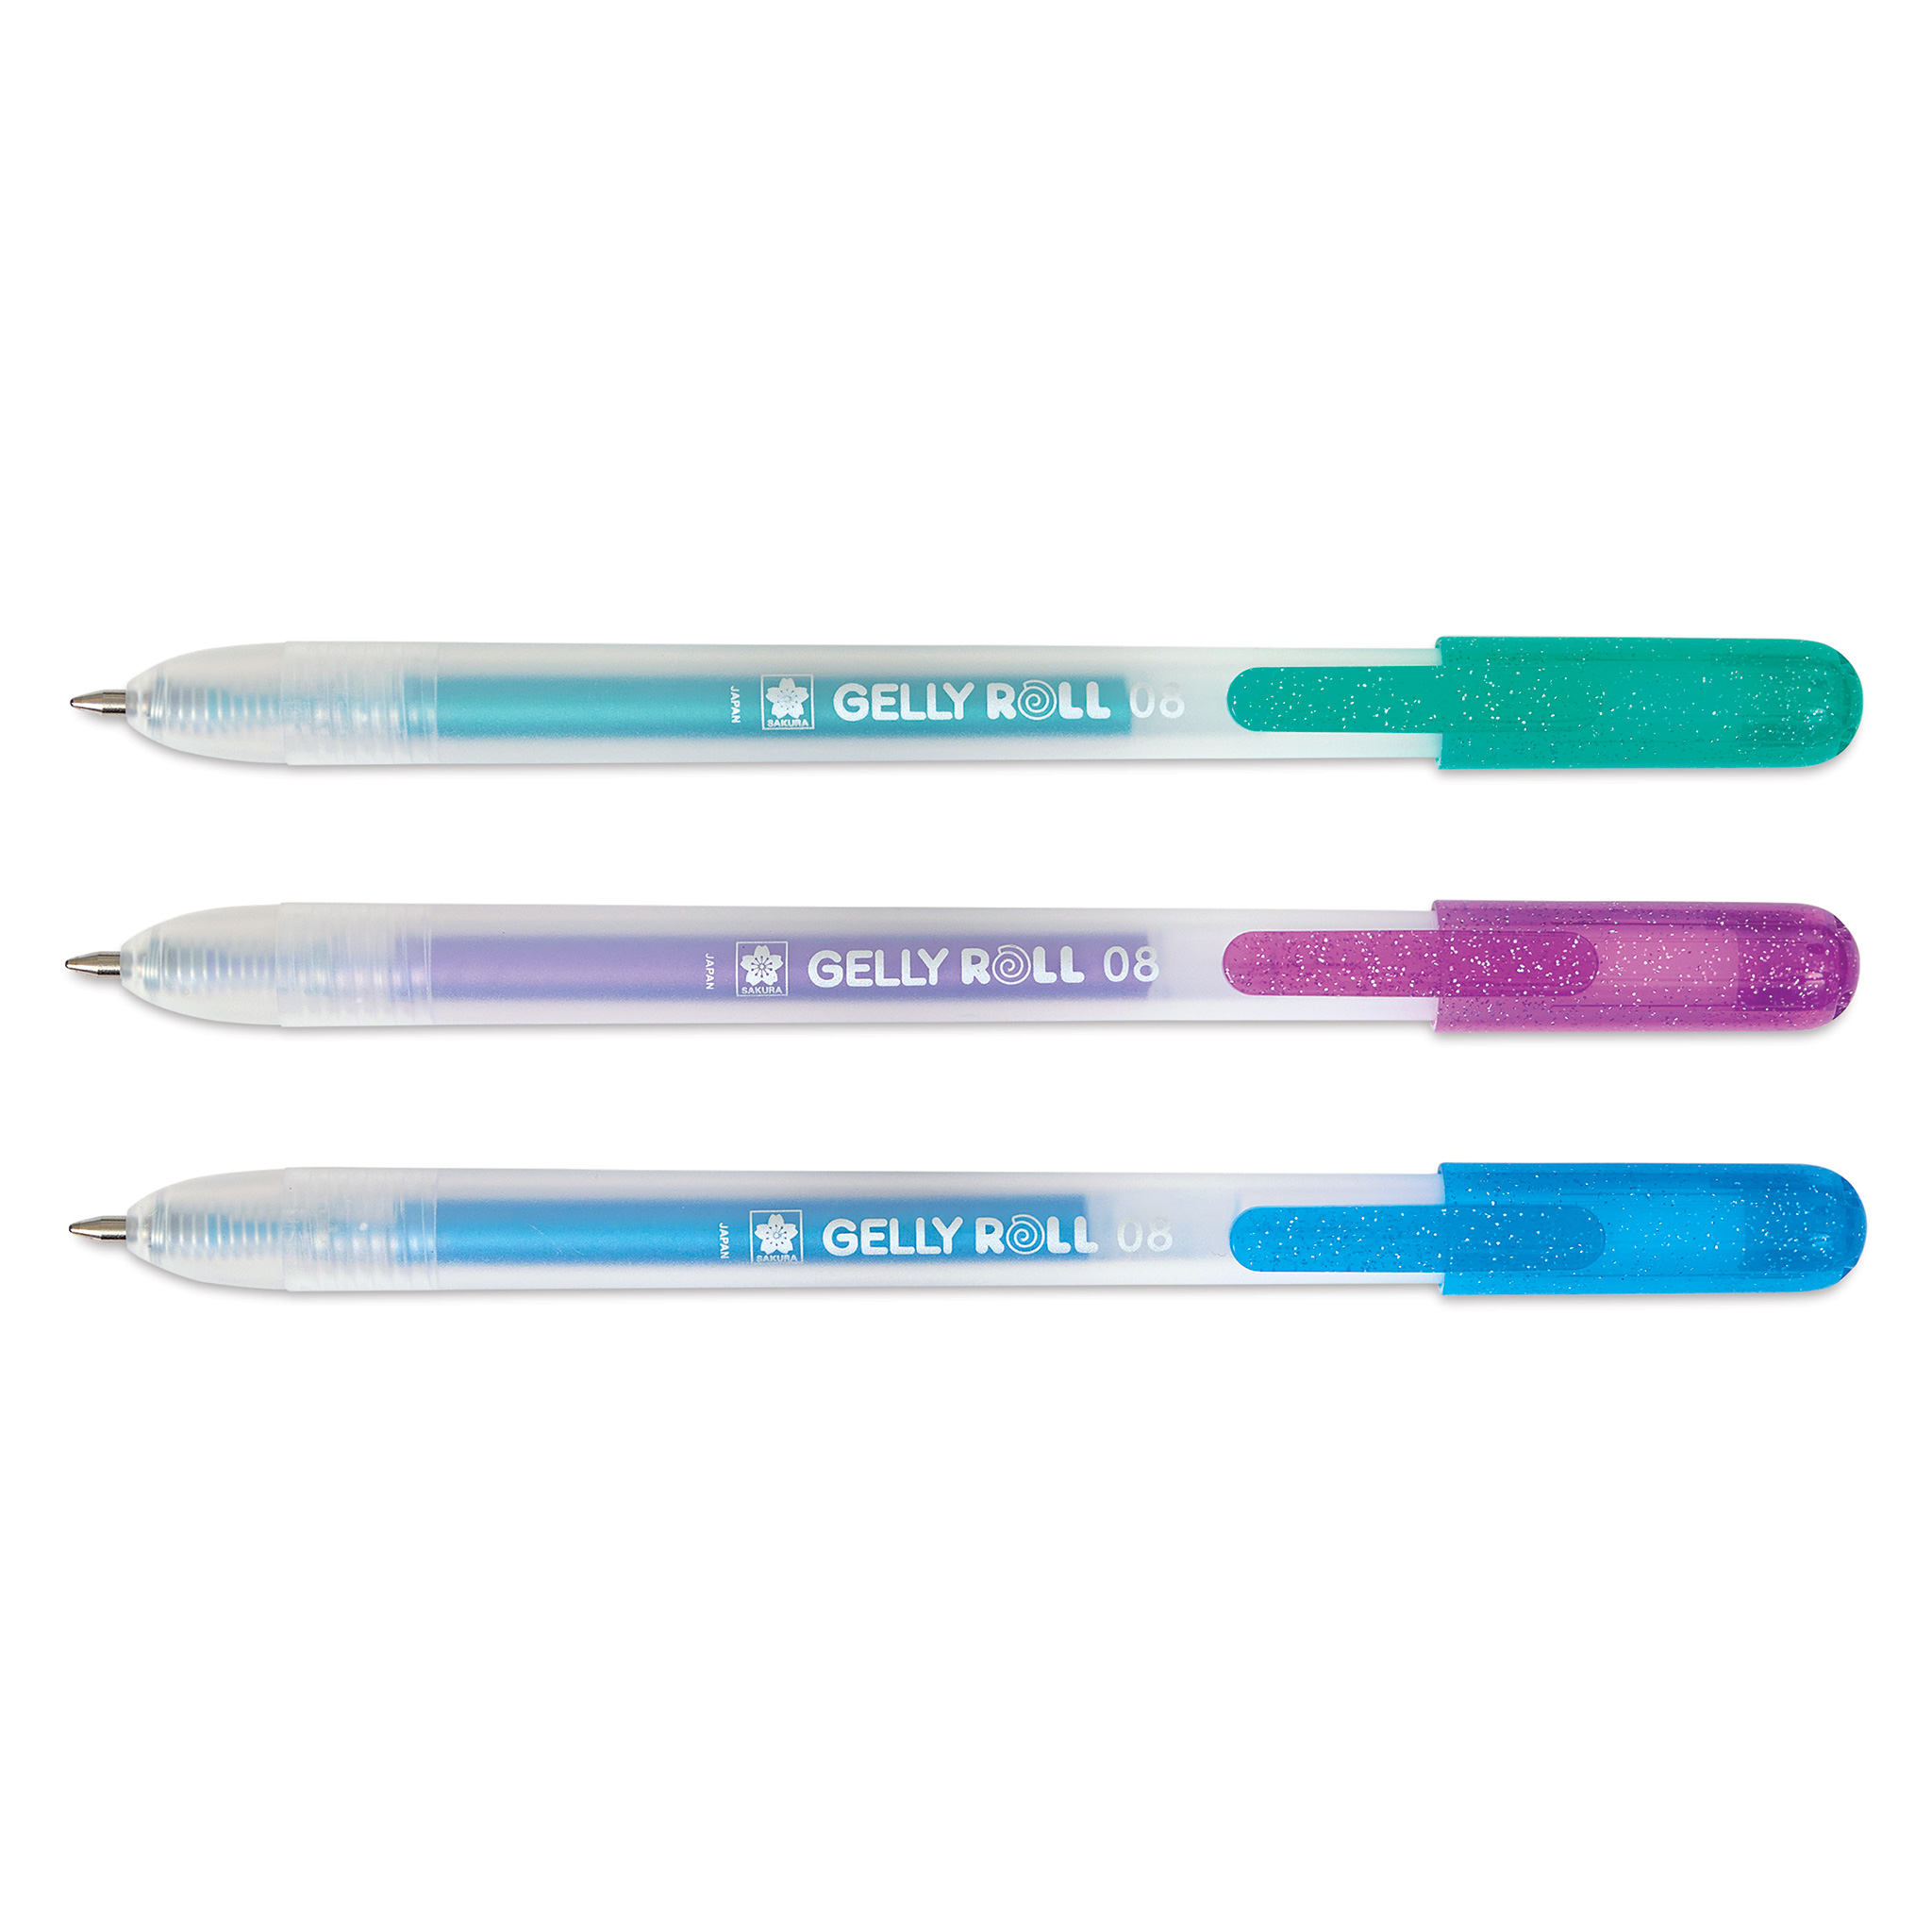 Sakura Gelly Roll Pen Set 3 Metallic & White Color Pen